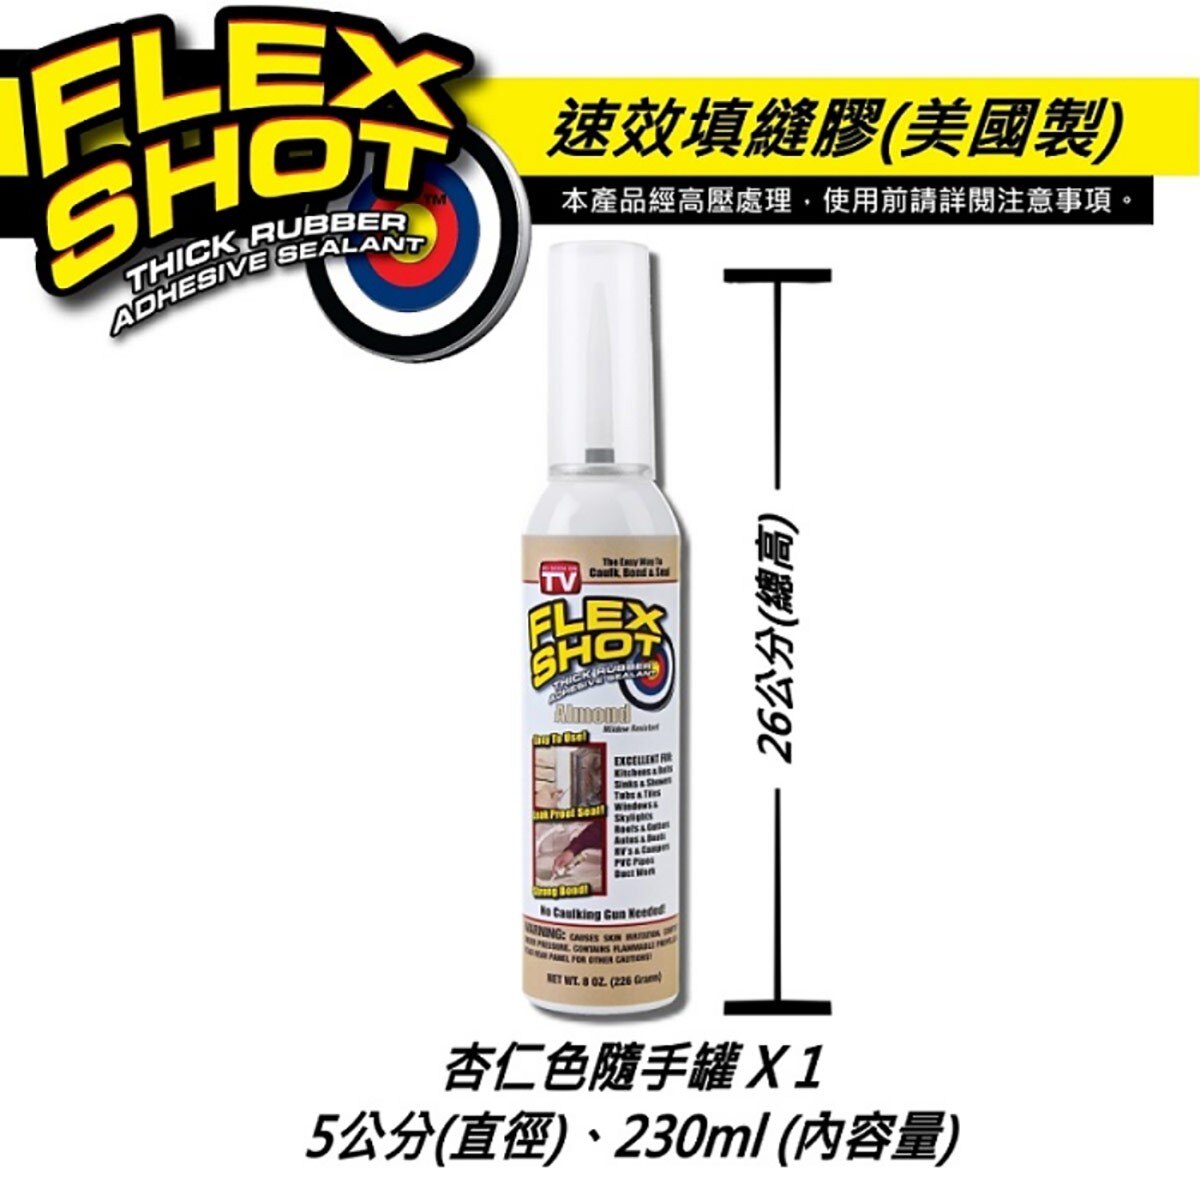 FLEX SHOT 速效填縫膠-杏仁色，強效抗霉，耐久不變質、不發霉。